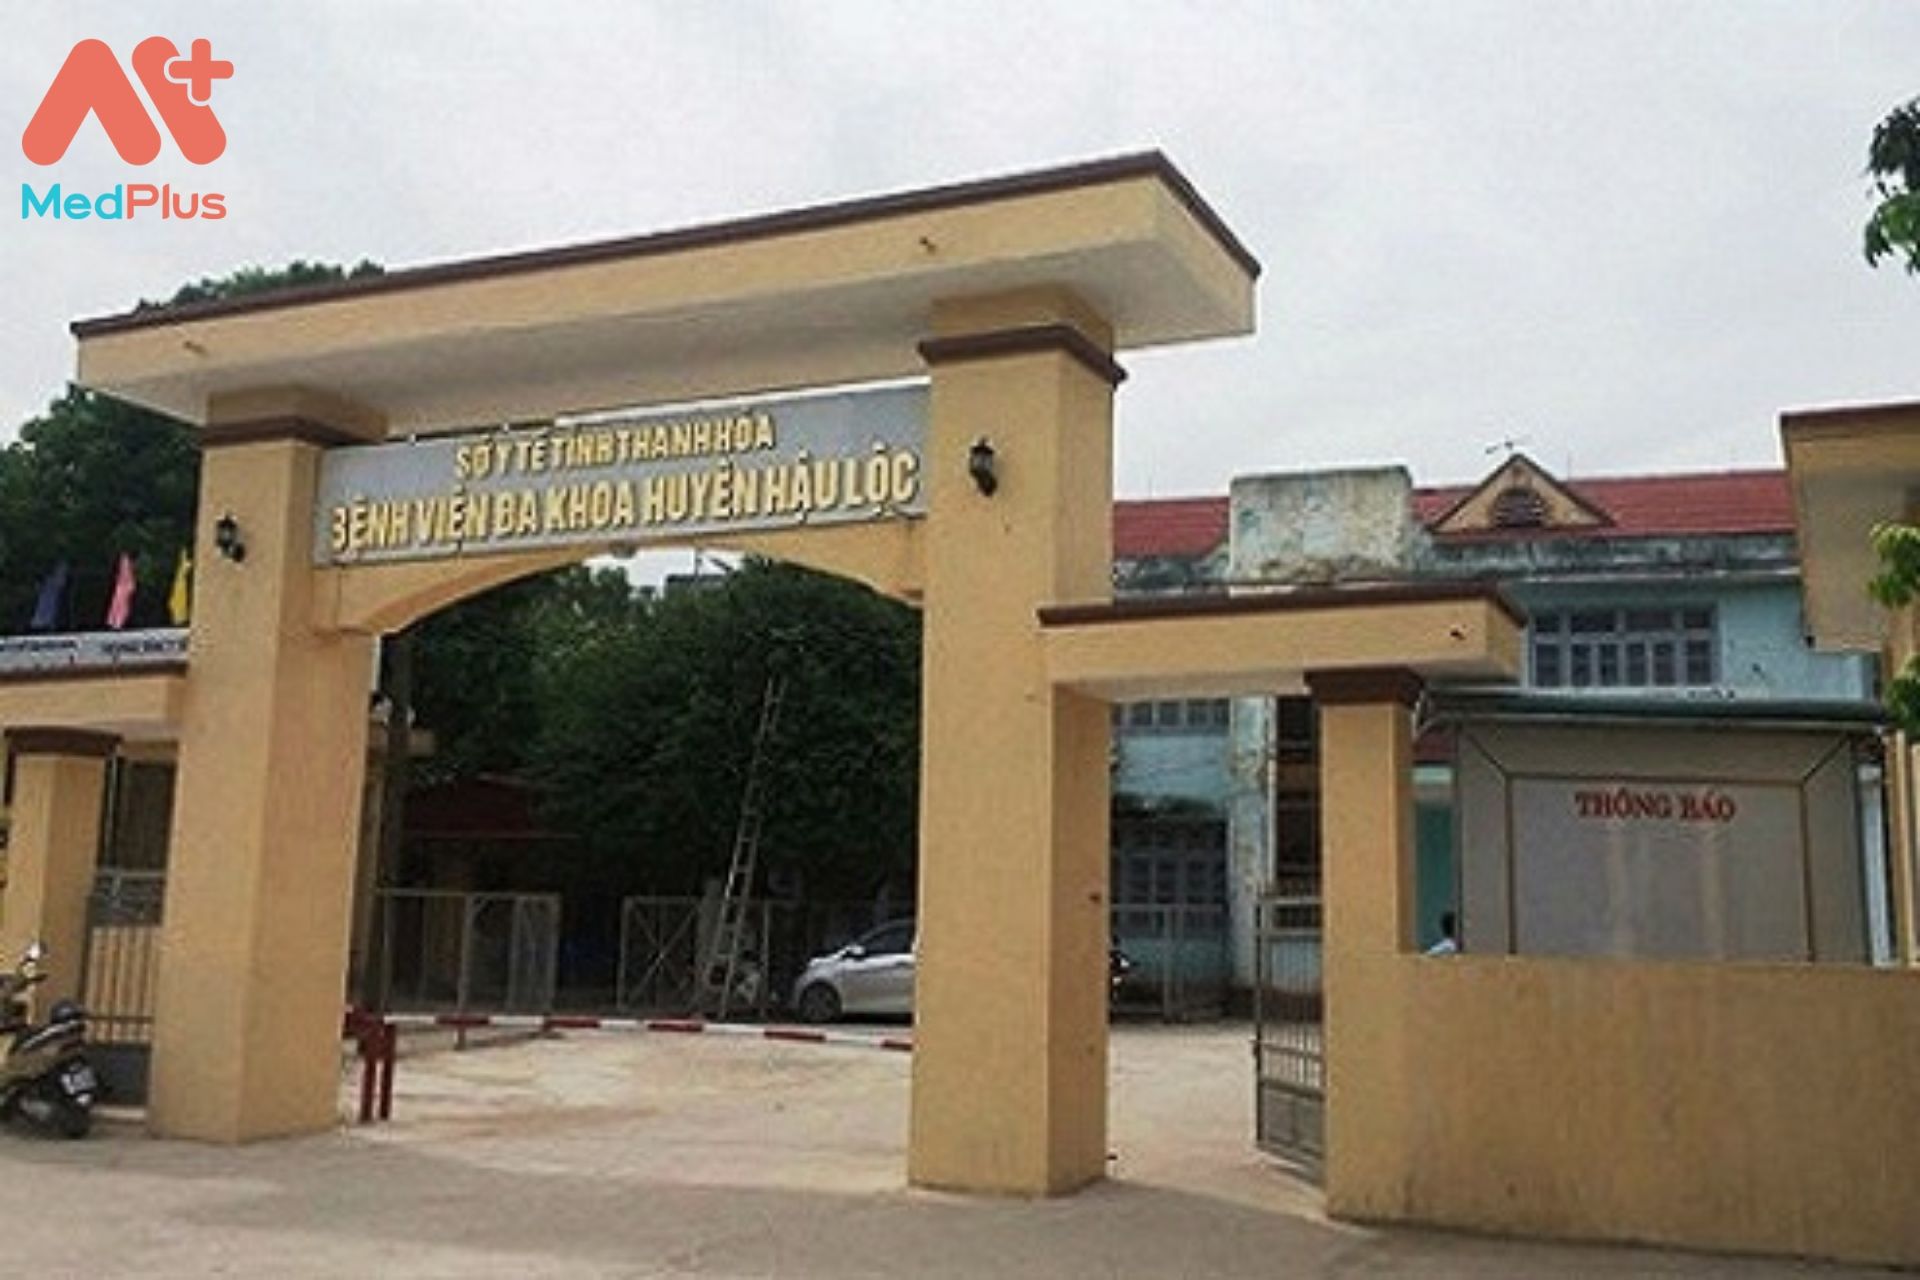 Bệnh viện đa khoa huyện Hậu Lộc